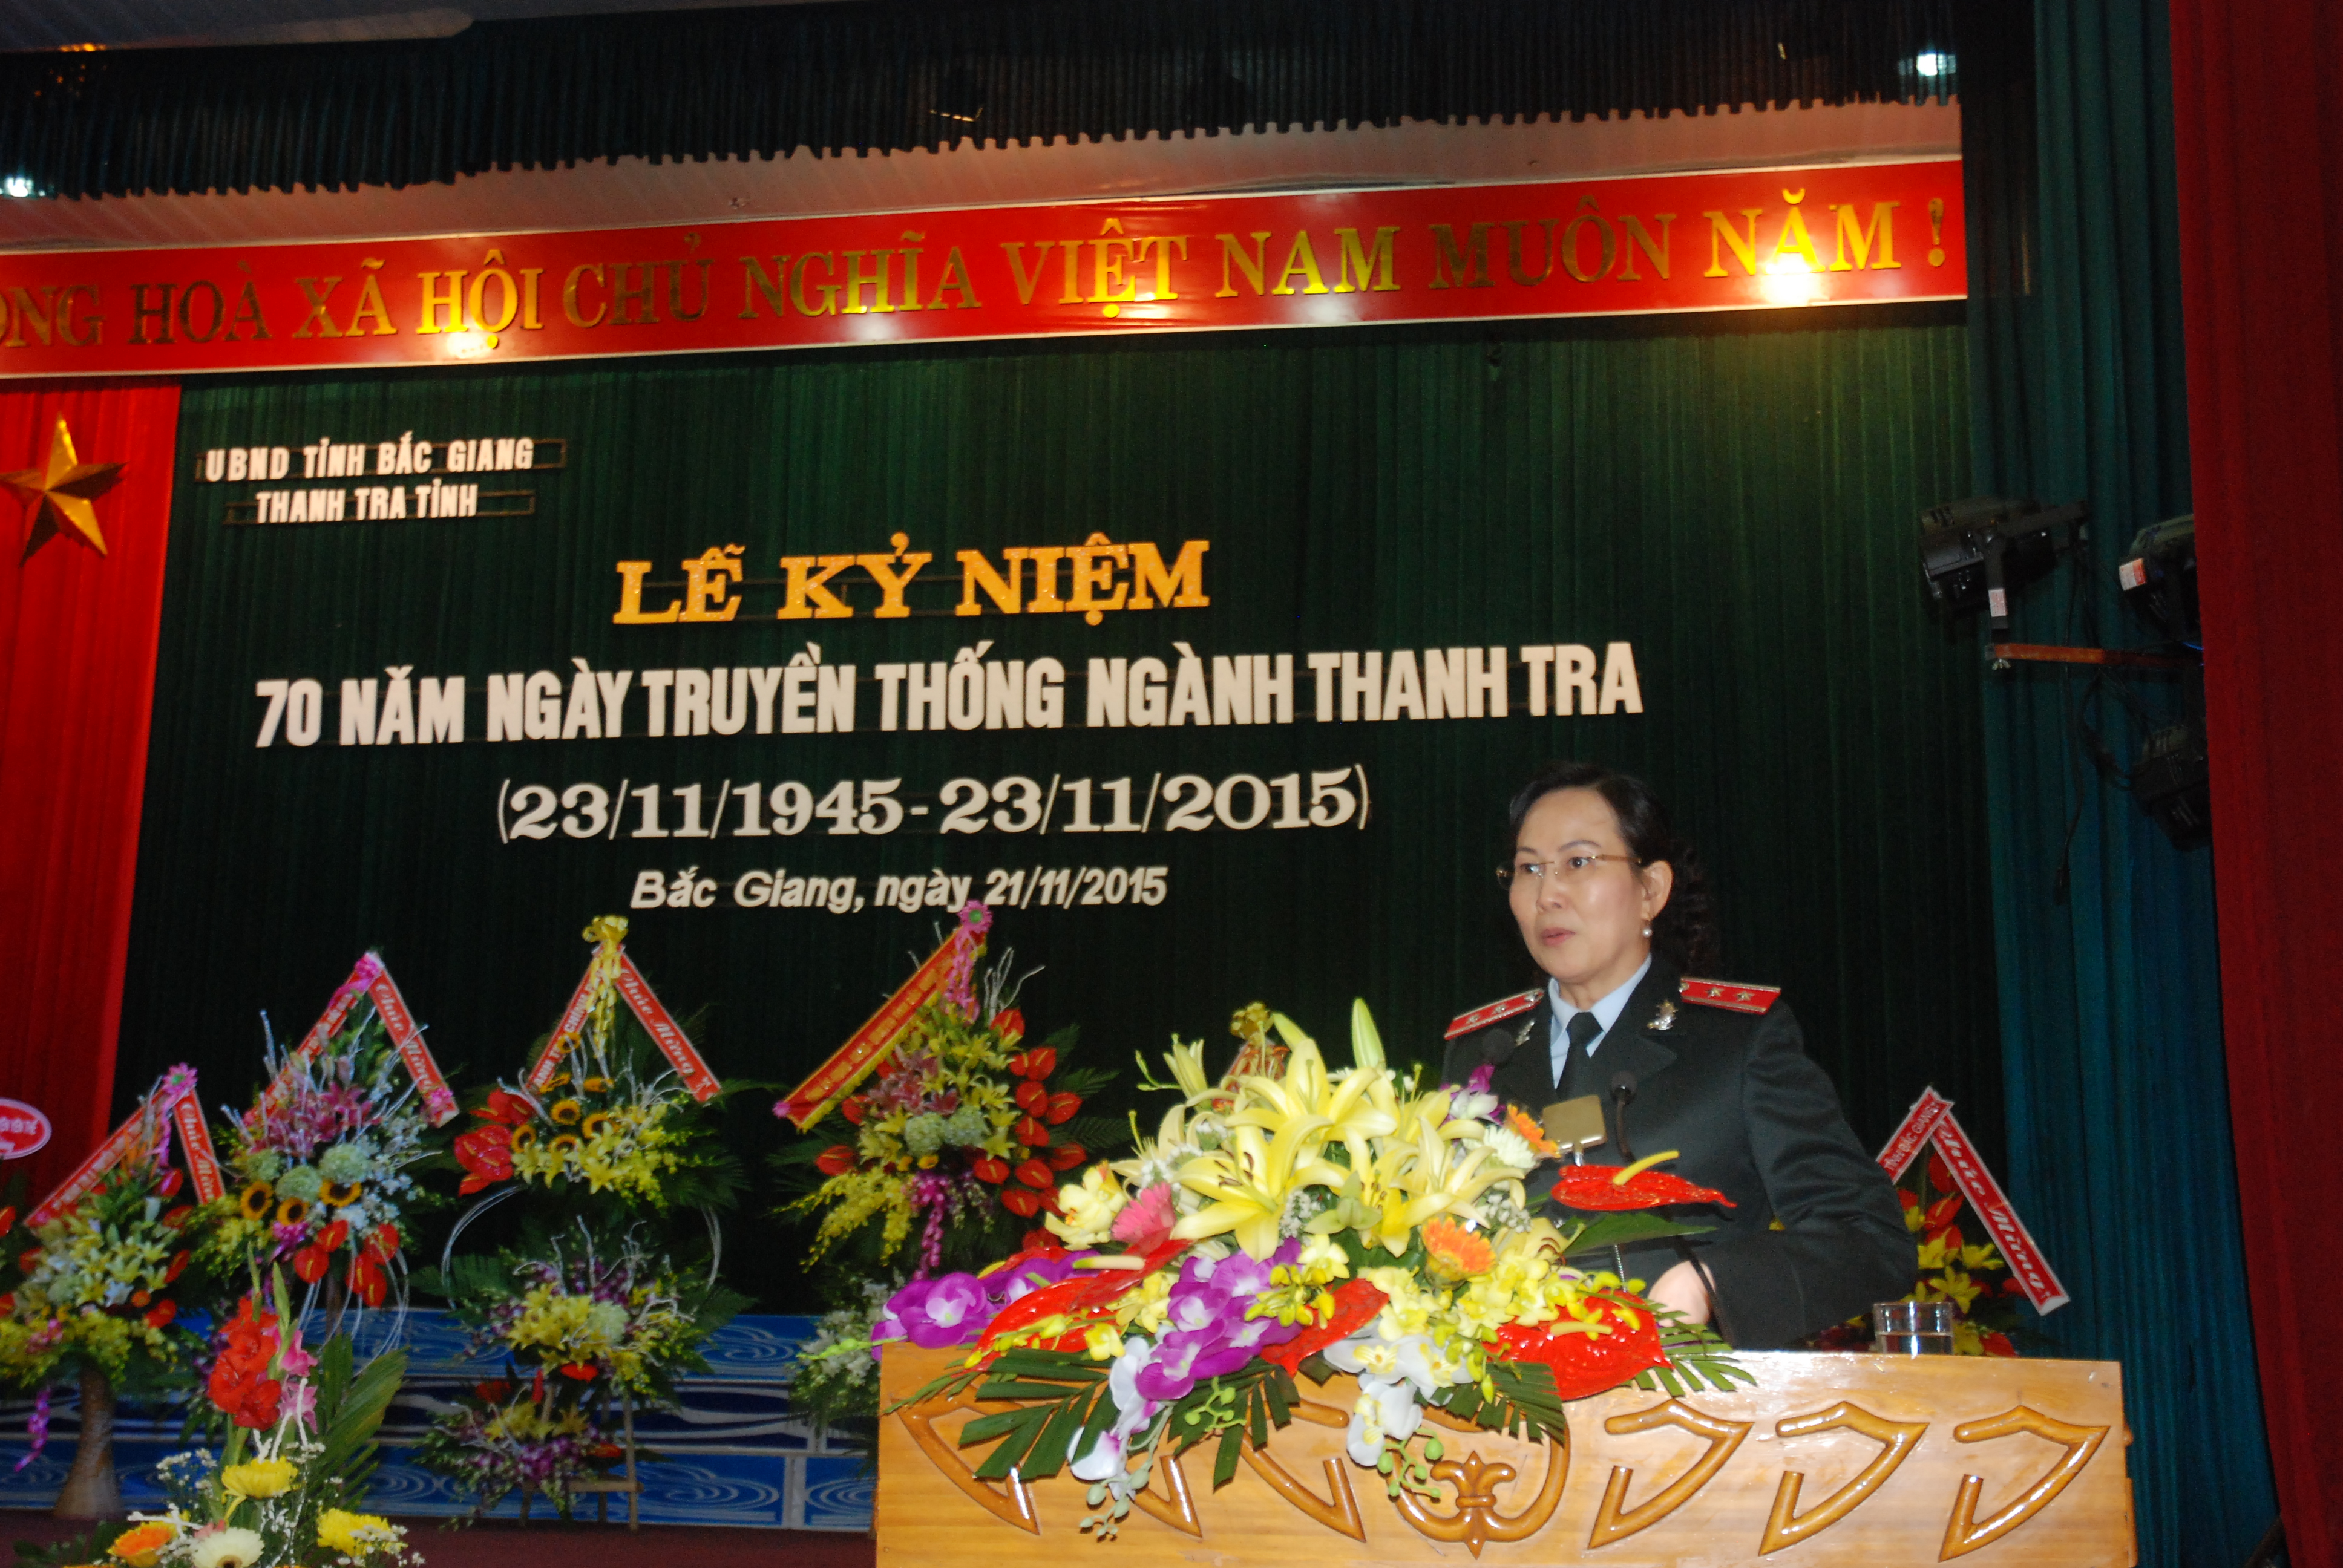 Kỷ niệm 70 năm ngày truyền thống Thanh tra Việt Nam